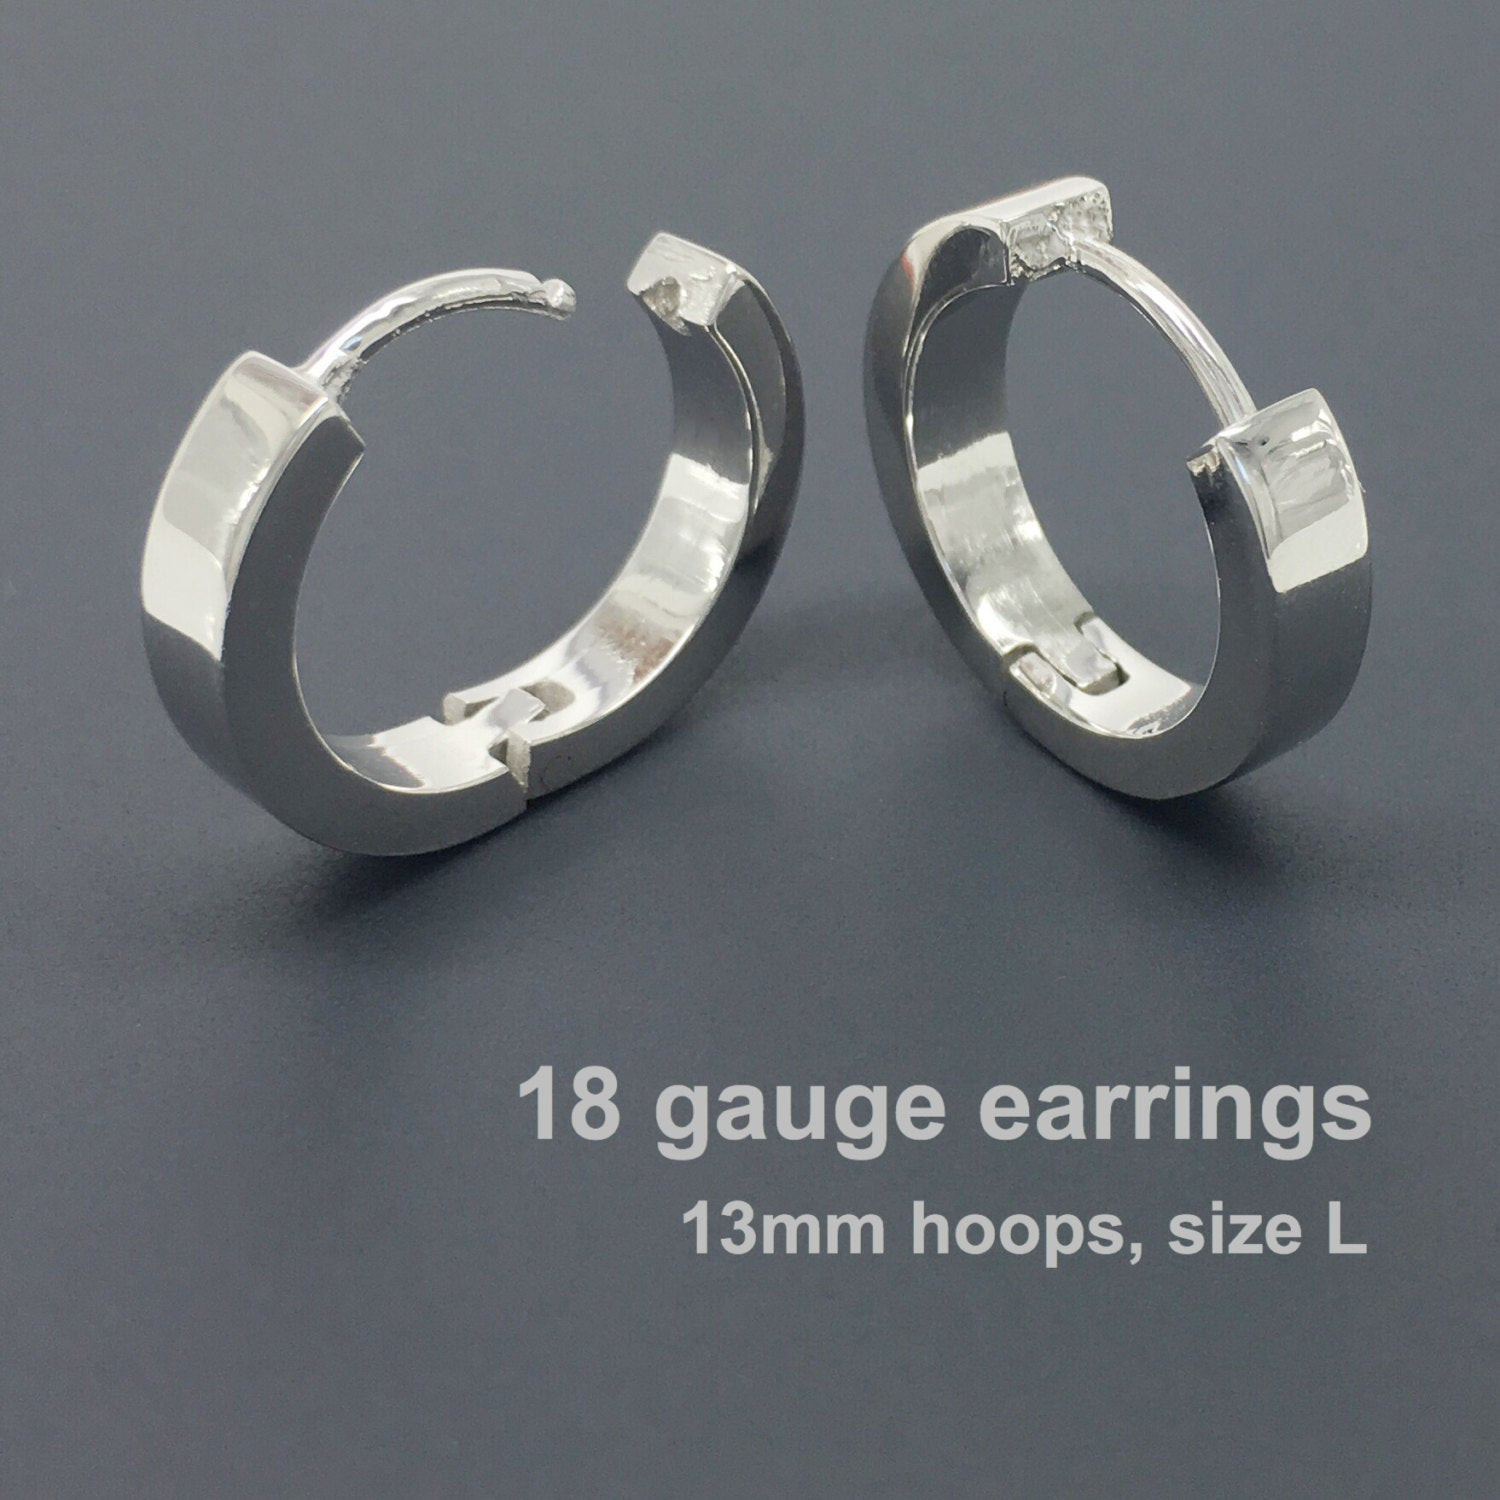 18 Gauge Earrings
 18 gauge earrings men s hoop earrings gauged hoop